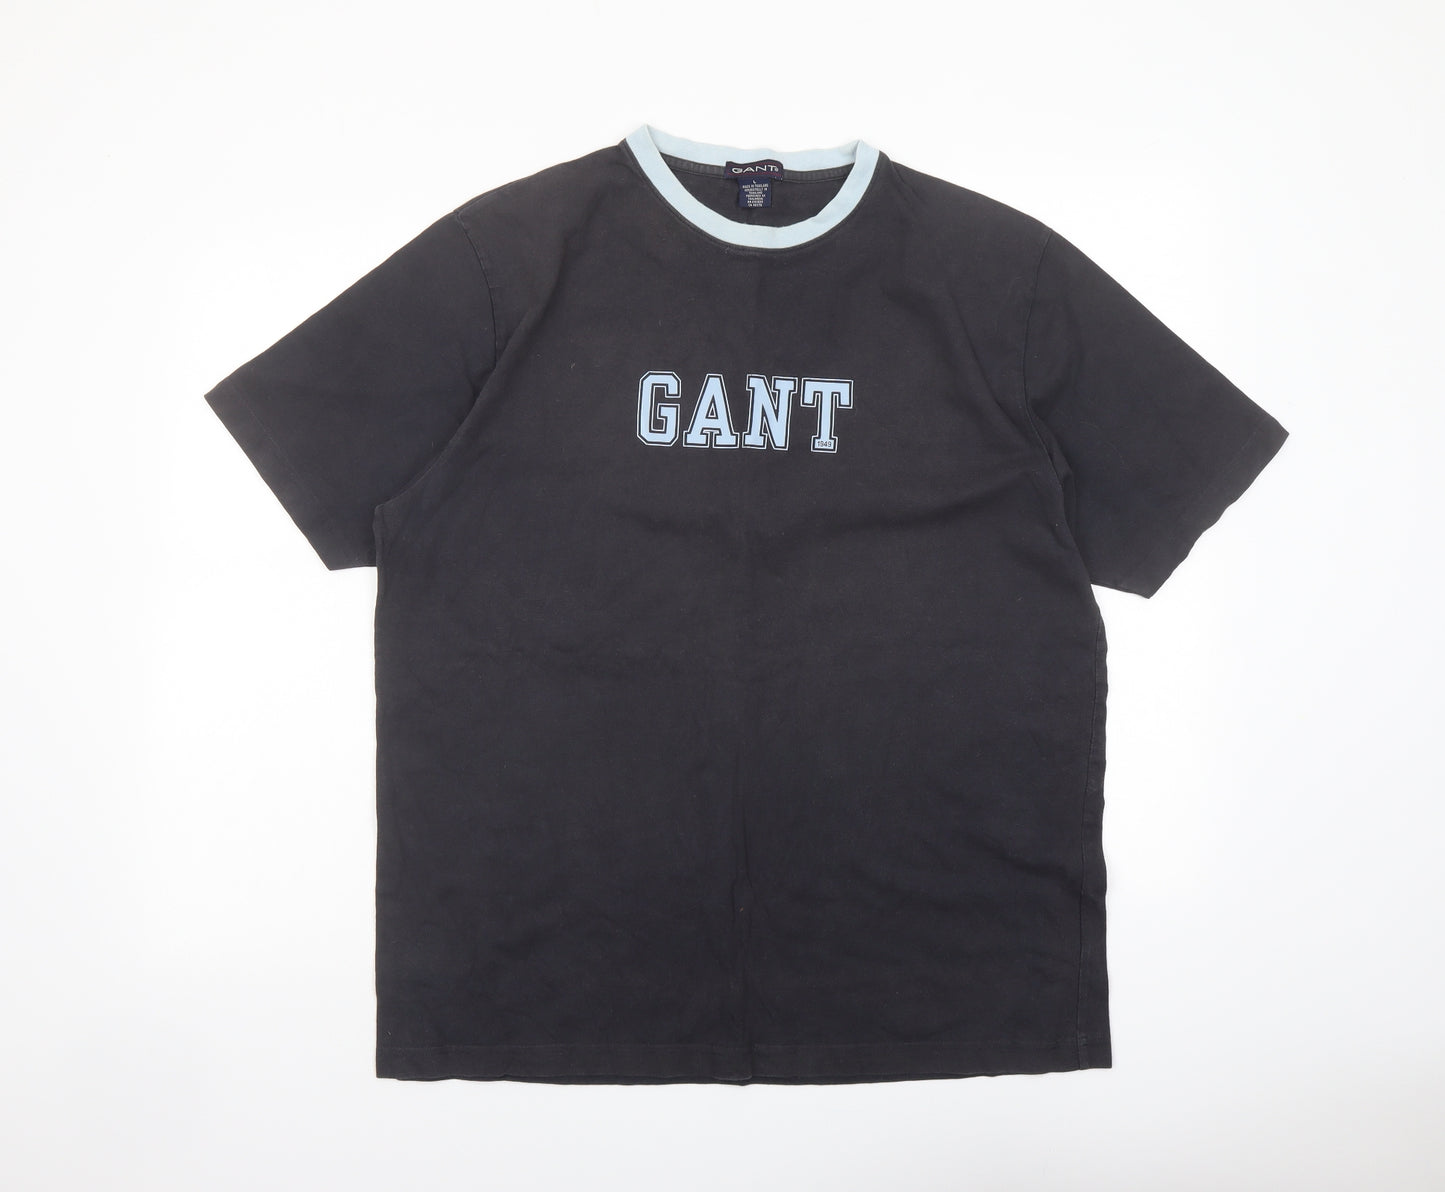 GANT Mens Grey Cotton T-Shirt Size L Crew Neck